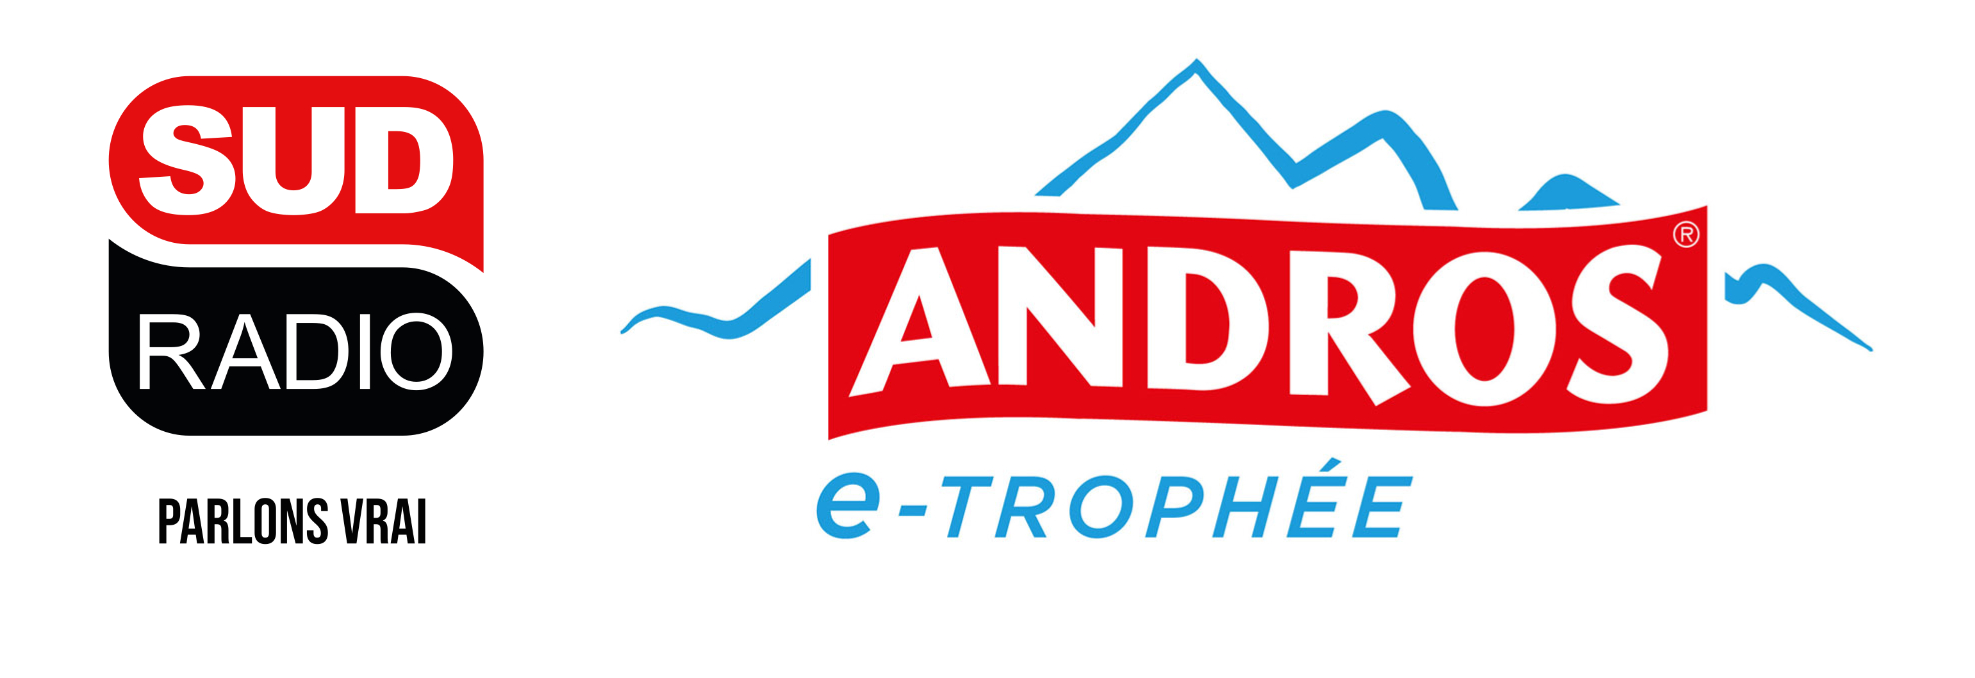 Sud Radio nouveau partenaire du Trophée Andros